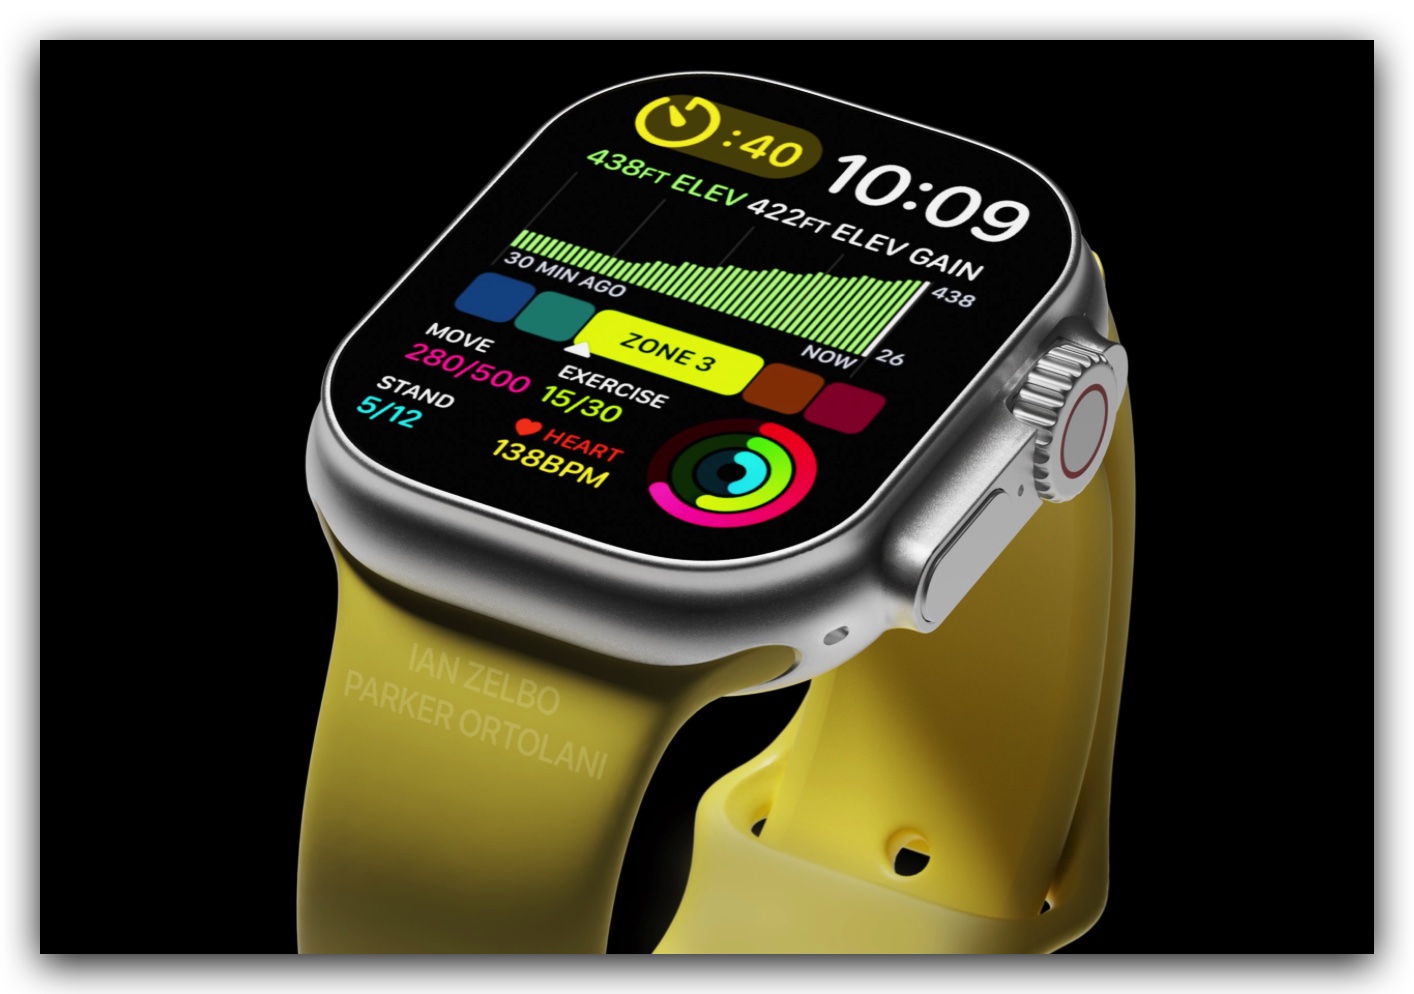 Apple Watch 8 Apple Watch Pro 規格 發表會 整理